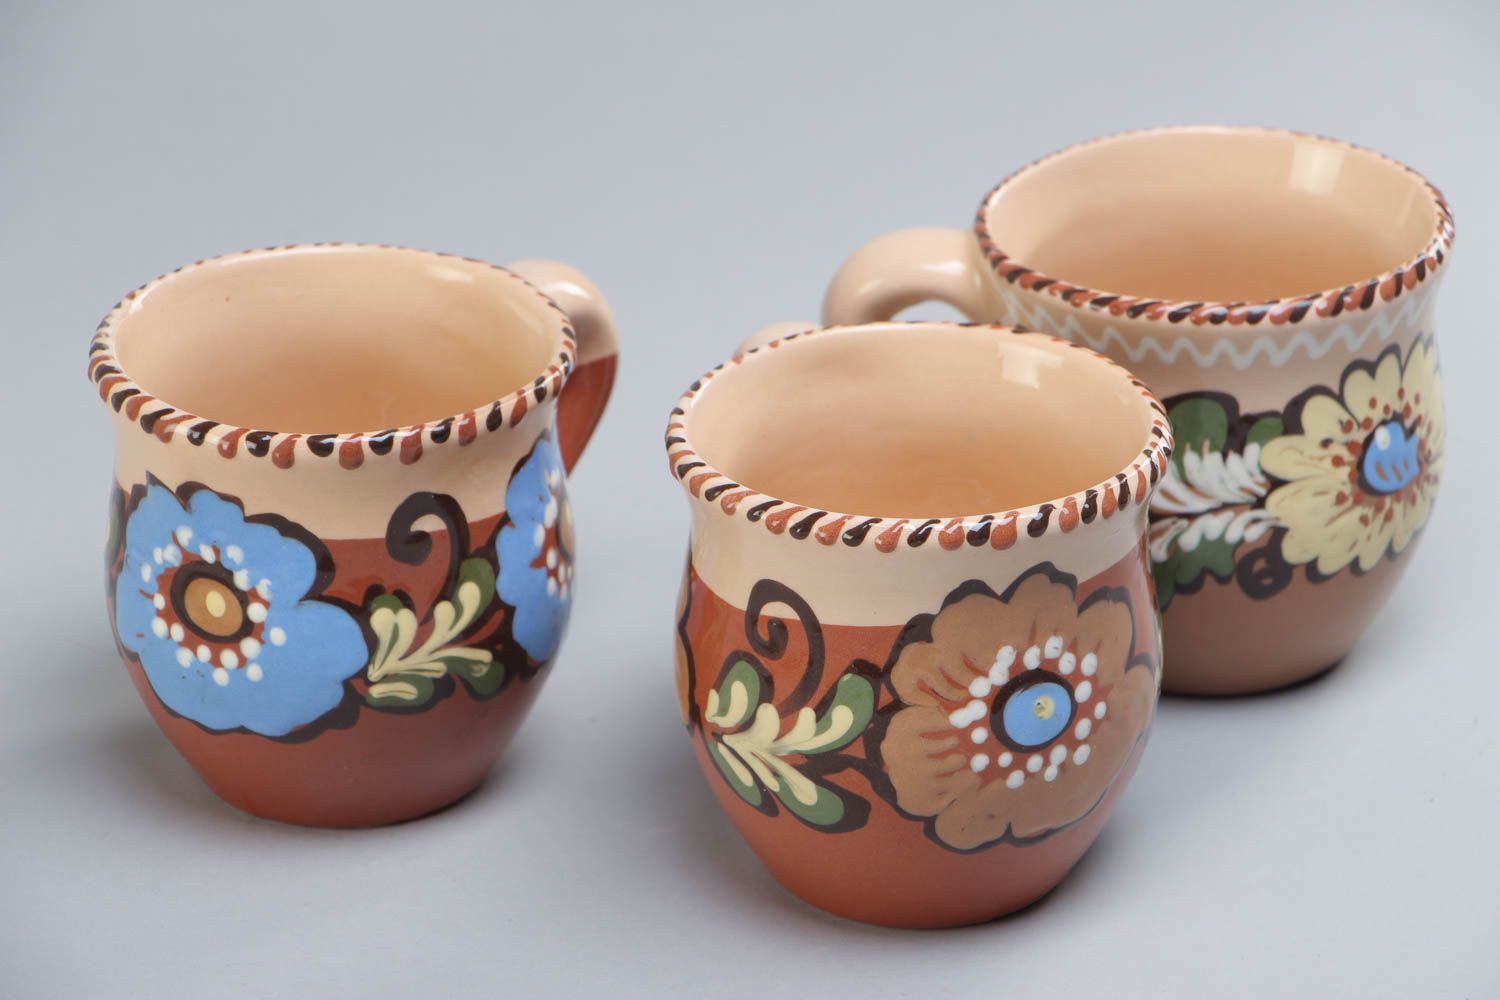 Juego de tazas artesanales de cerámica pintadas con barniz multicolor 3 piezas por 250 ml foto 2